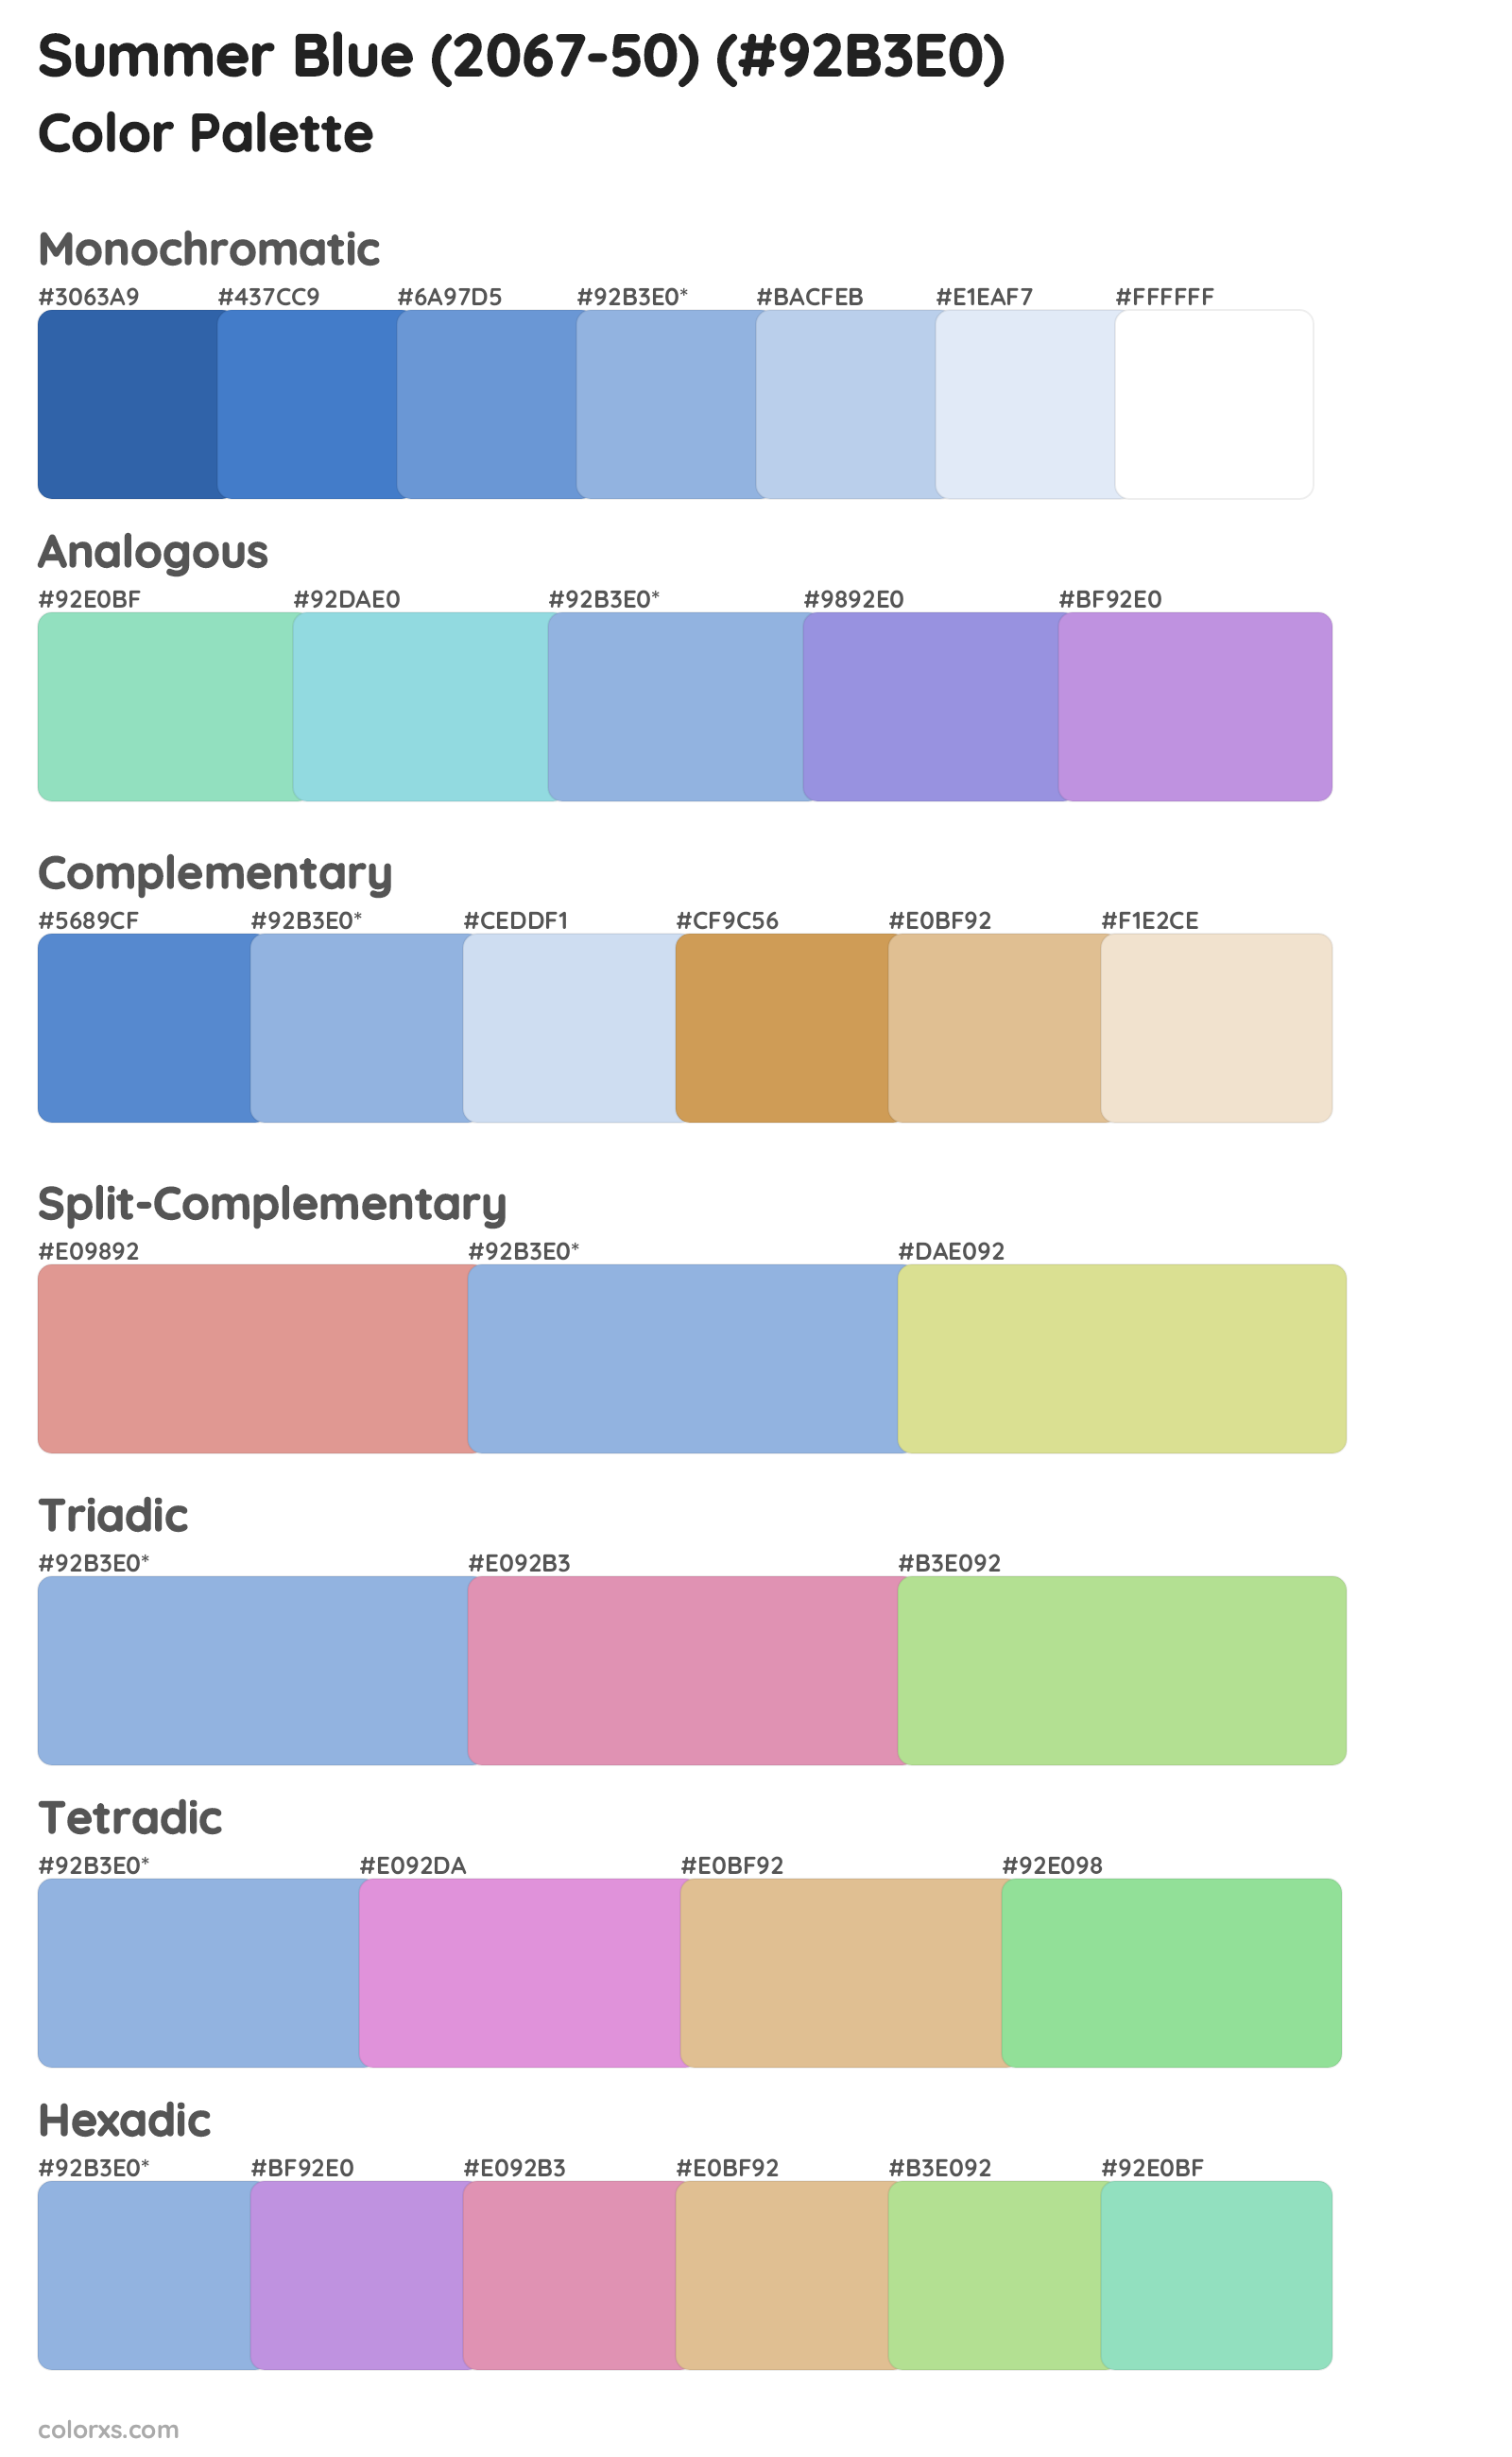 Summer Blue (2067-50) Color Scheme Palettes